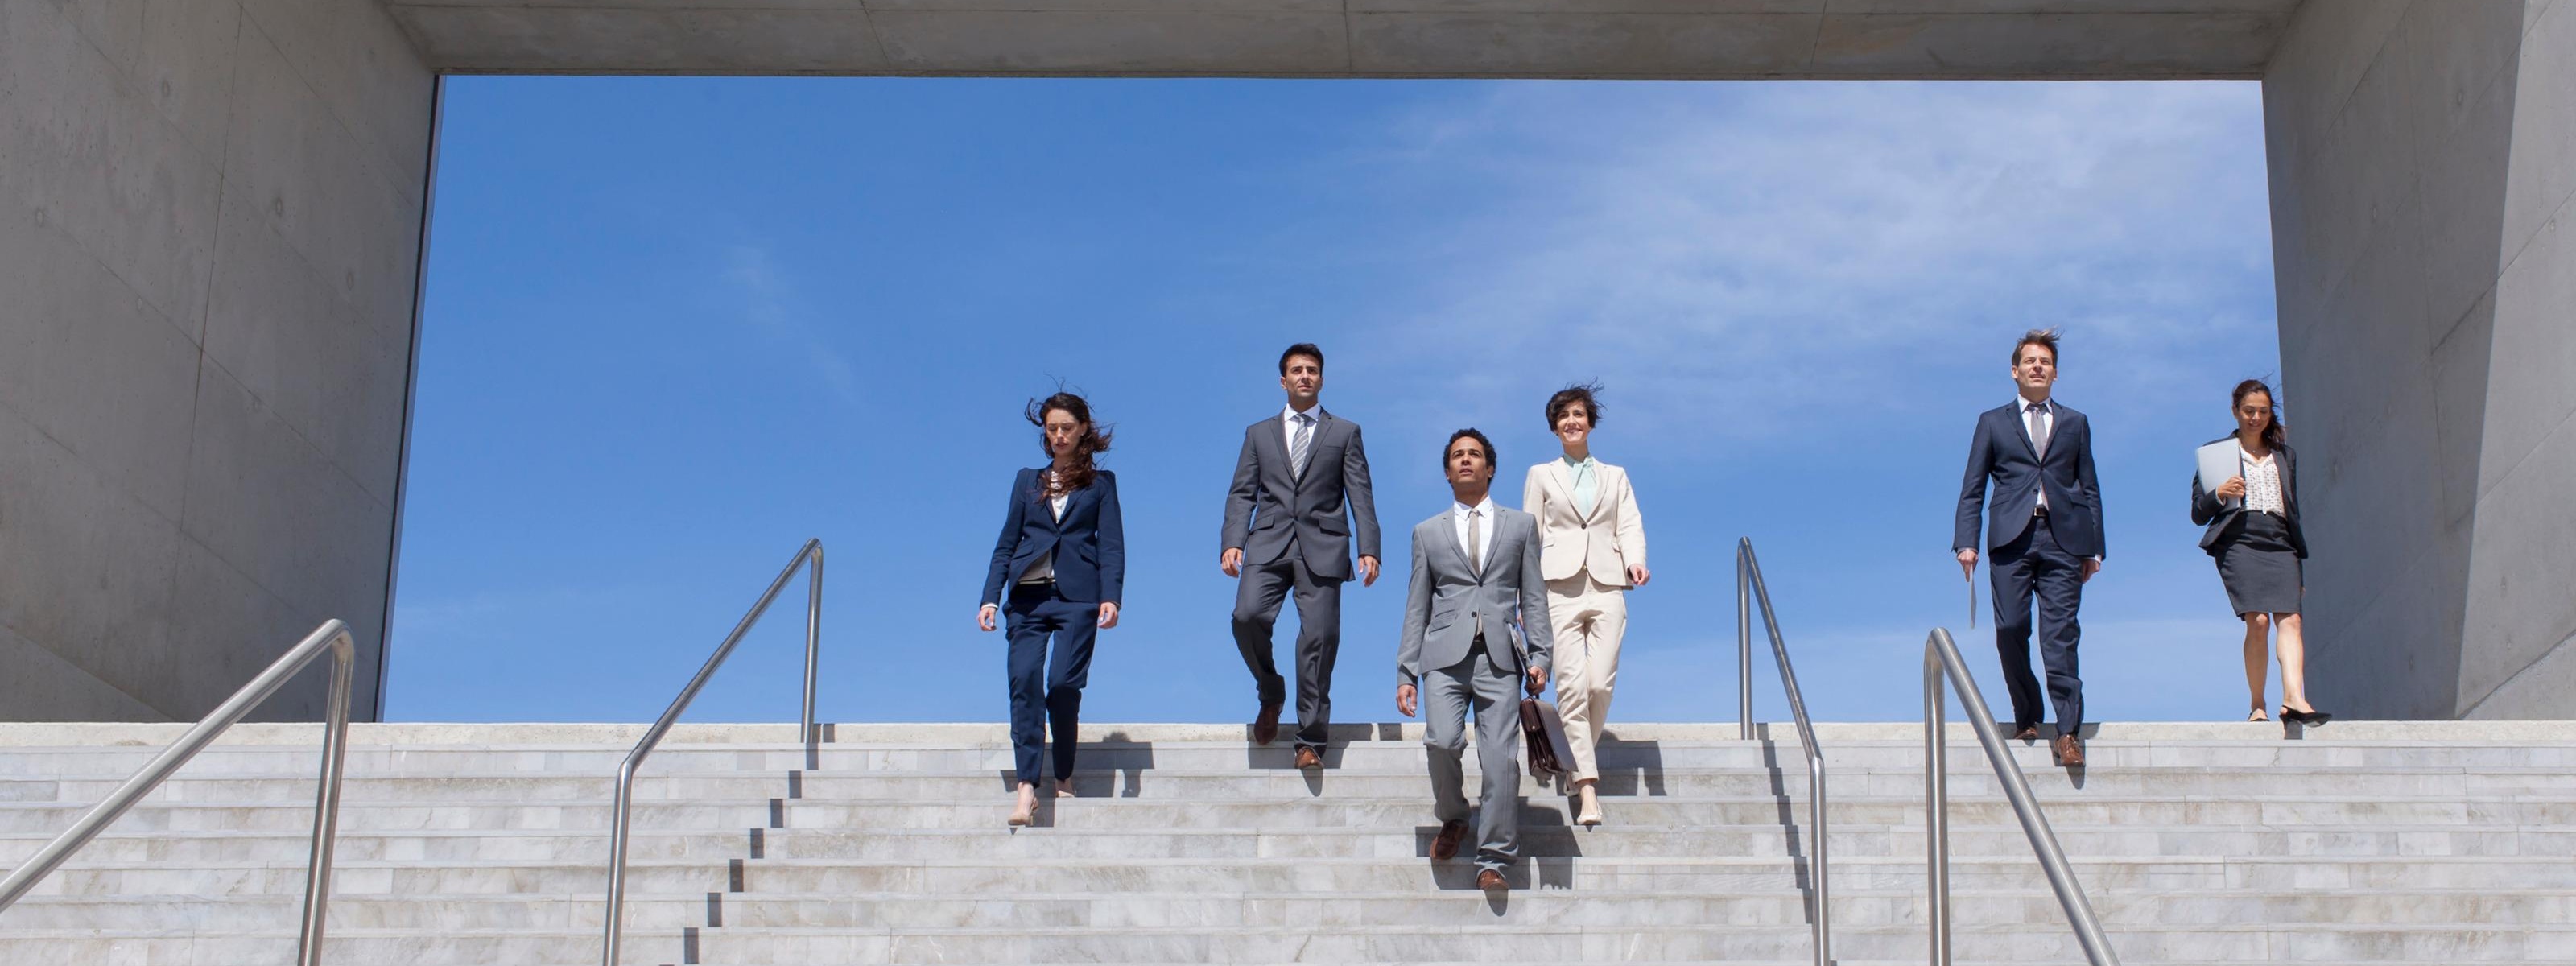 Mehrere Personen in Businesskleidung eine Betontreppe herabsteigend, im  Hintergrund blauer Himmel